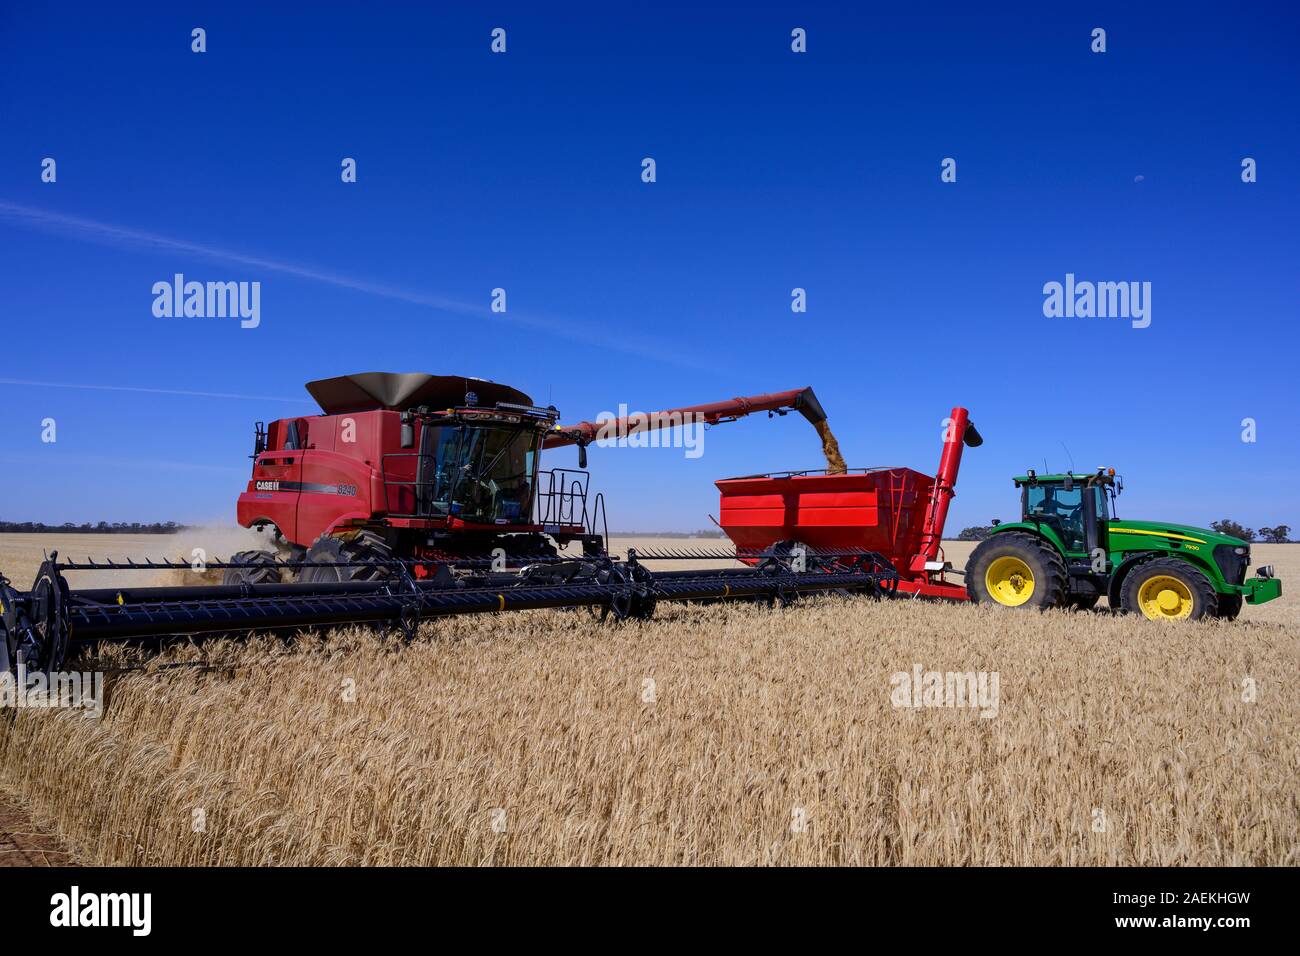 La récolte de céréales dans la région de Wimmera de Victoria, Australie. Banque D'Images